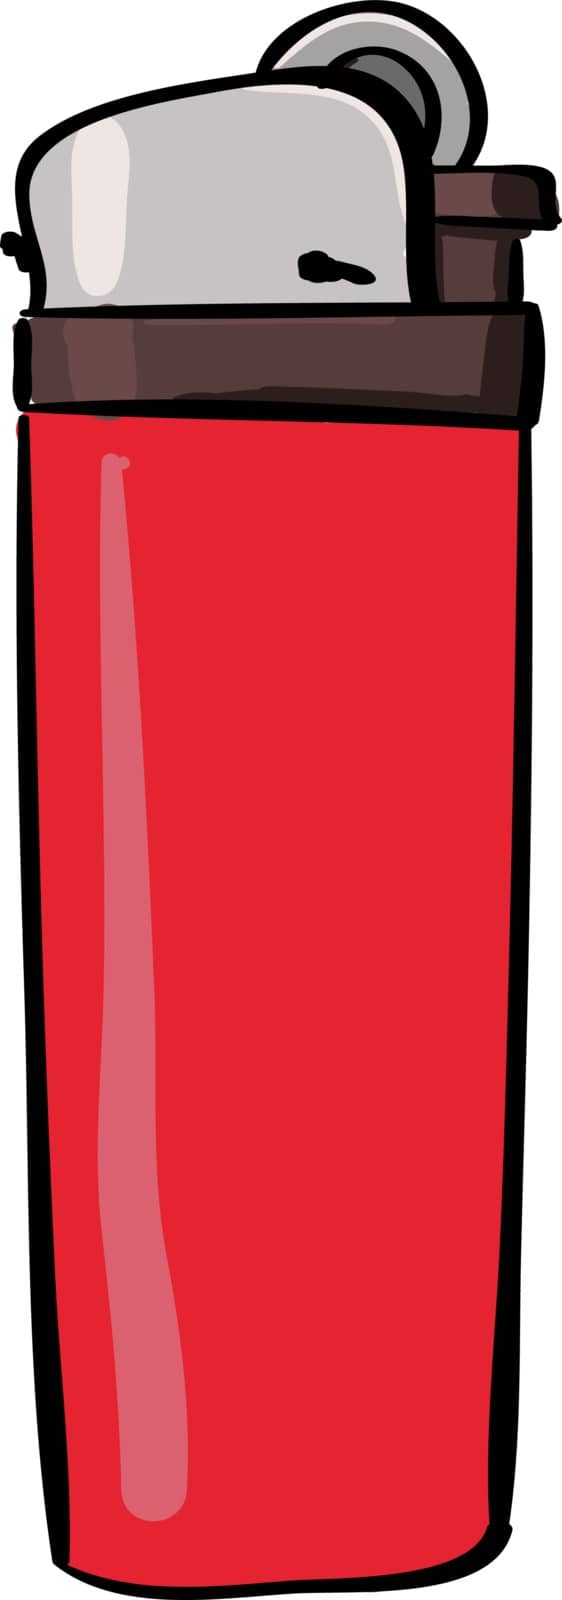 Lighter red, illustration, vector on white background. by Morphart